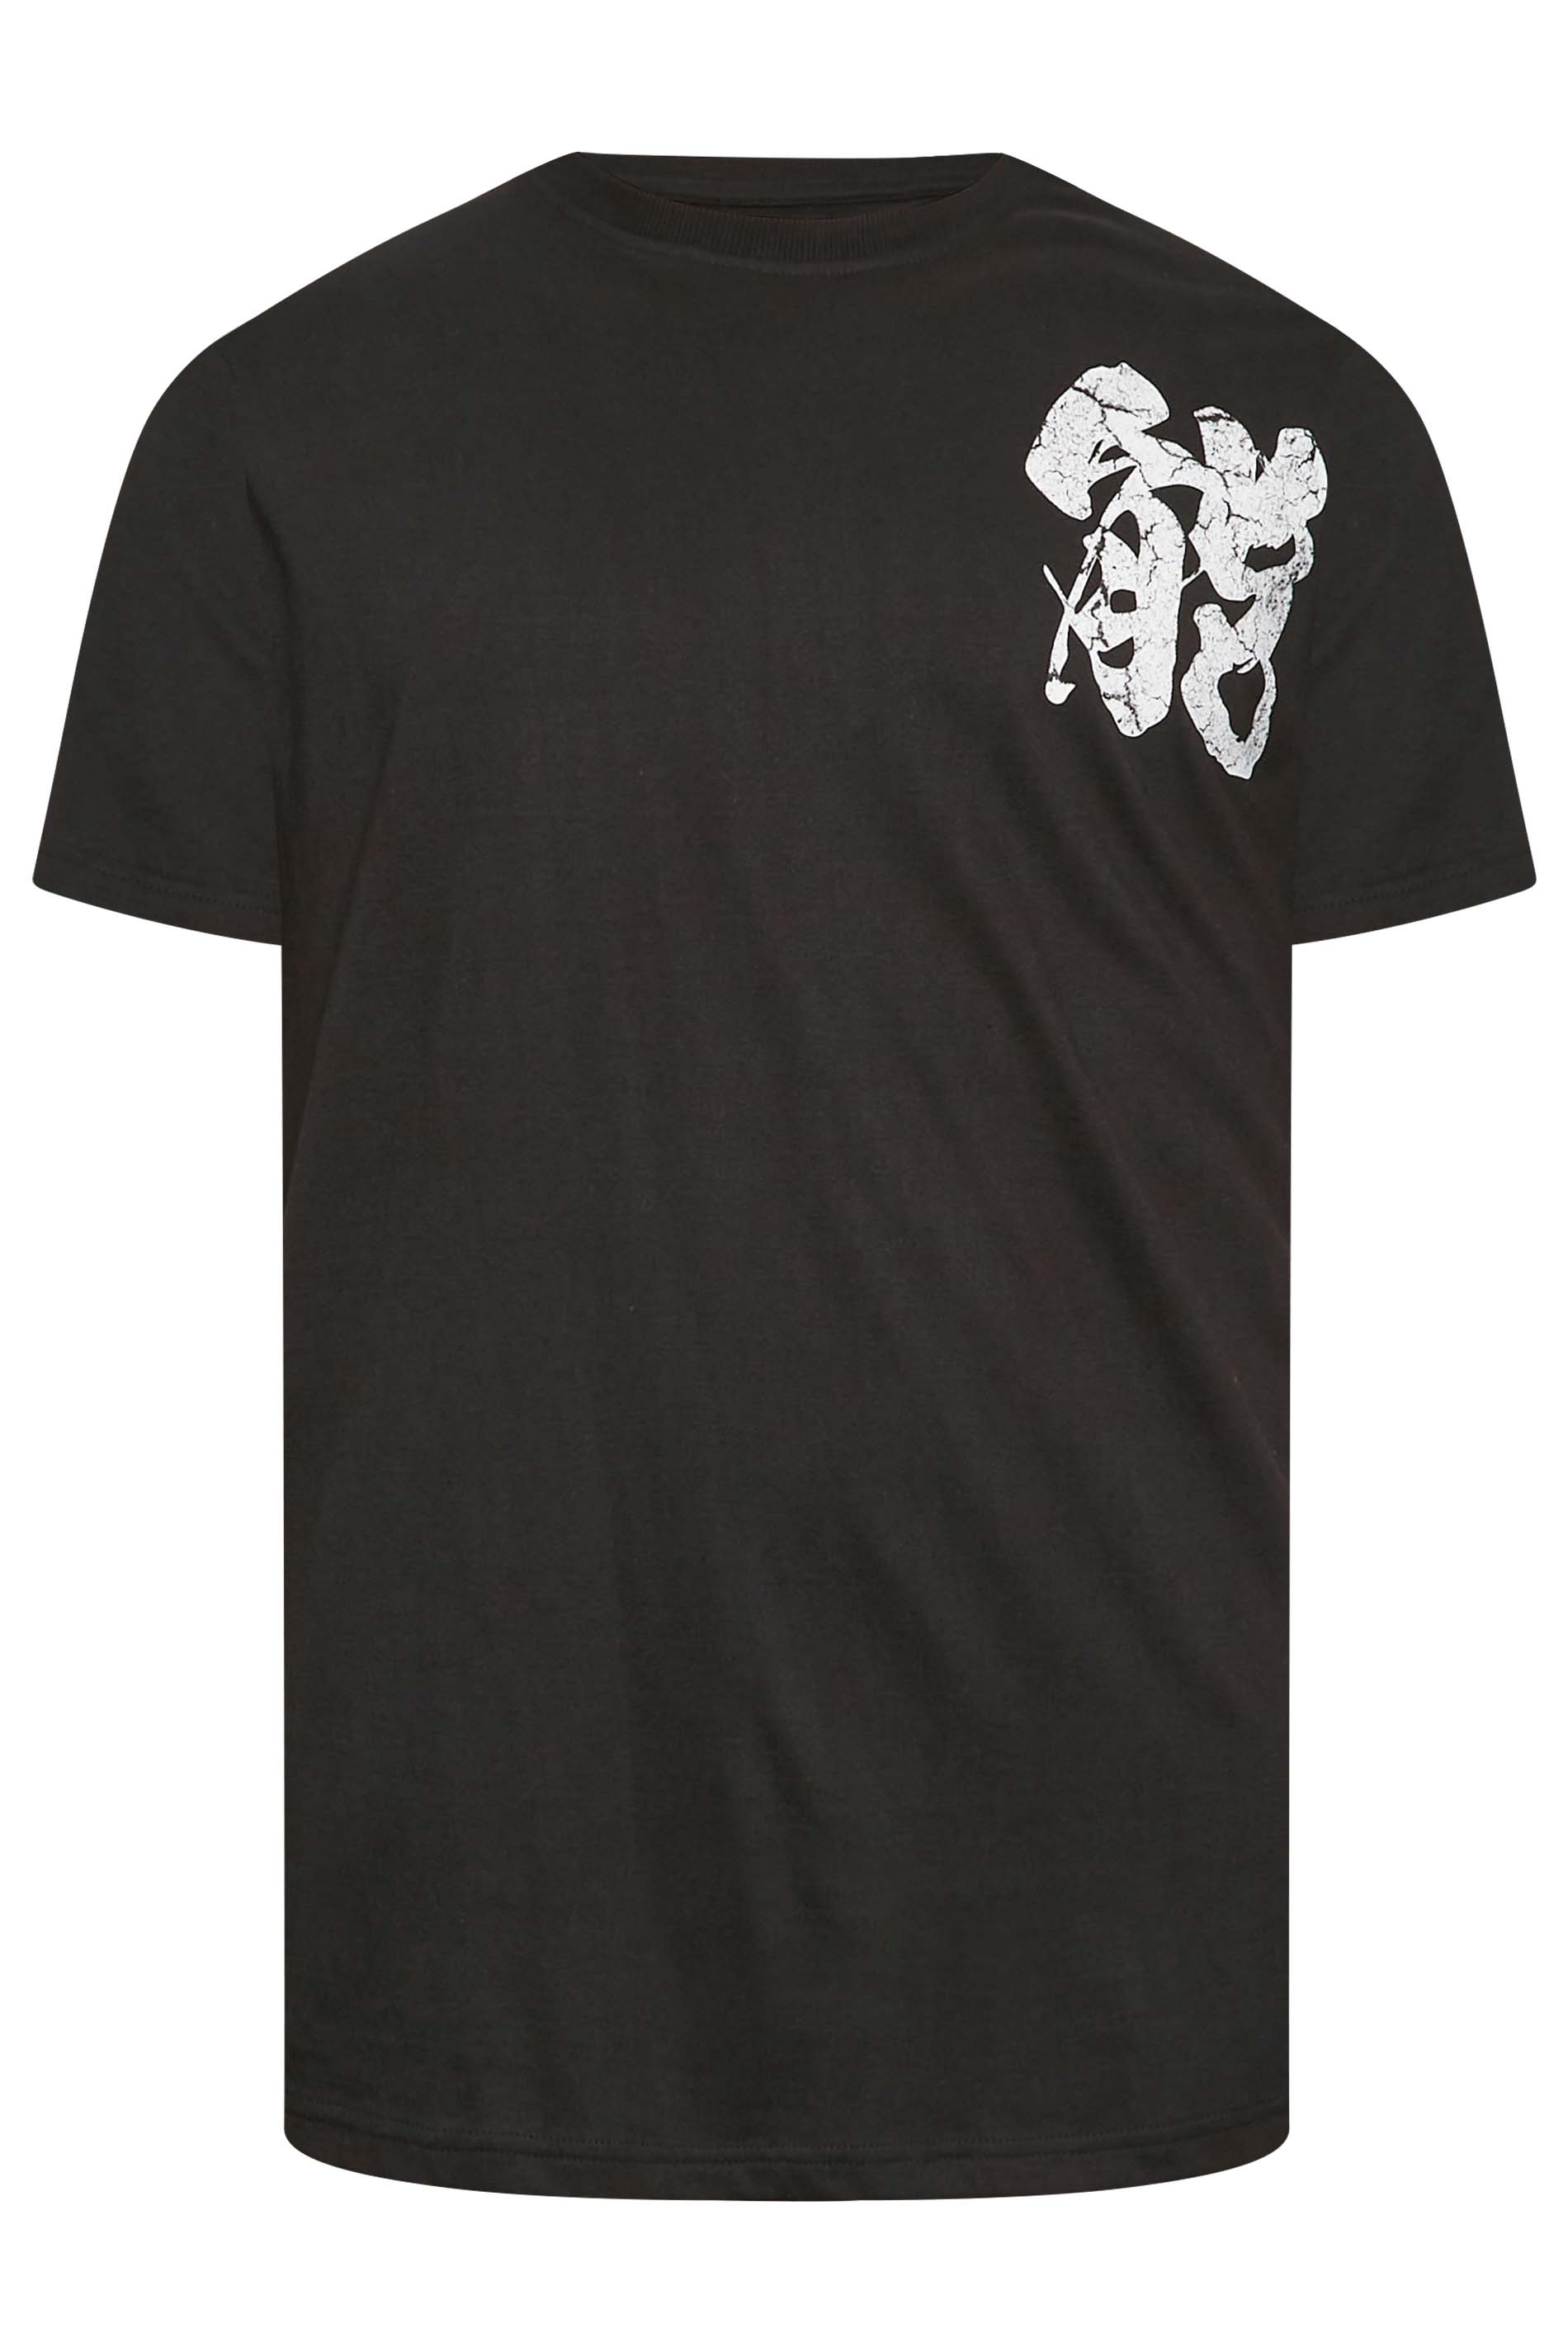 BadRhino Big & Tall Black Samurai Graphic Print T-Shirt | BadRhino